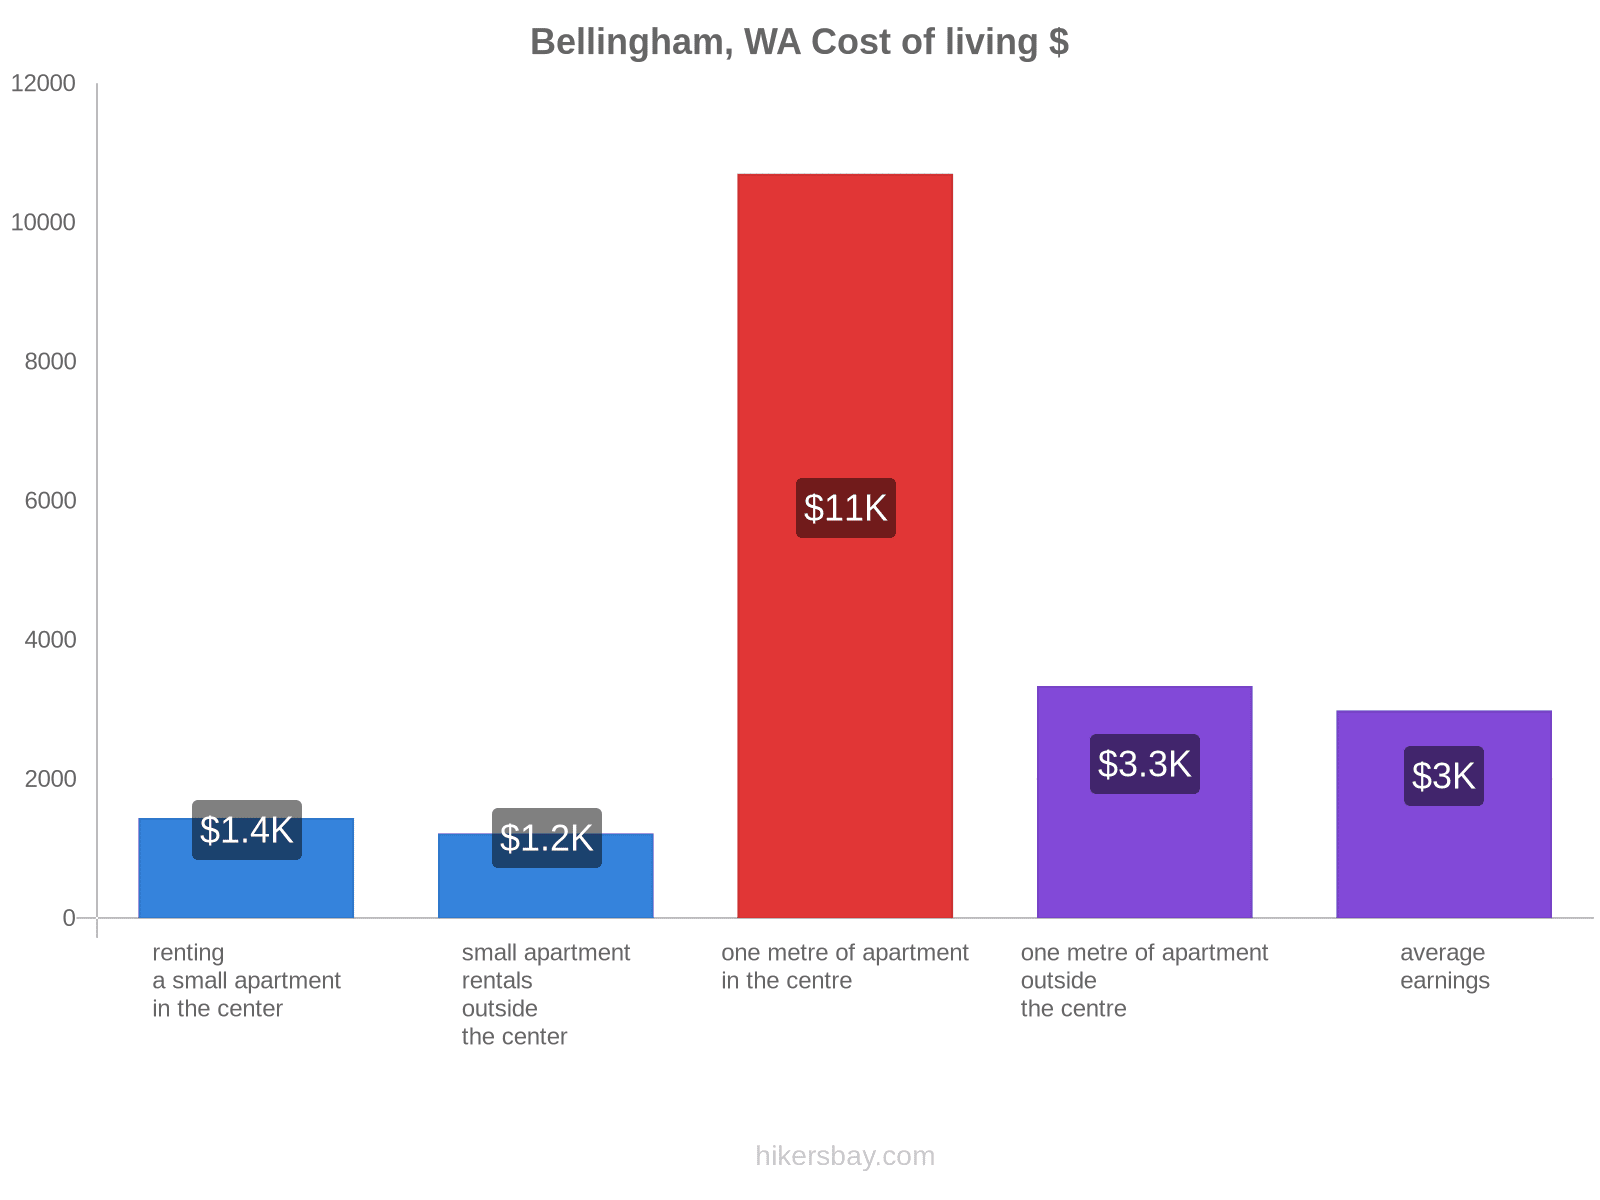 Bellingham, WA cost of living hikersbay.com